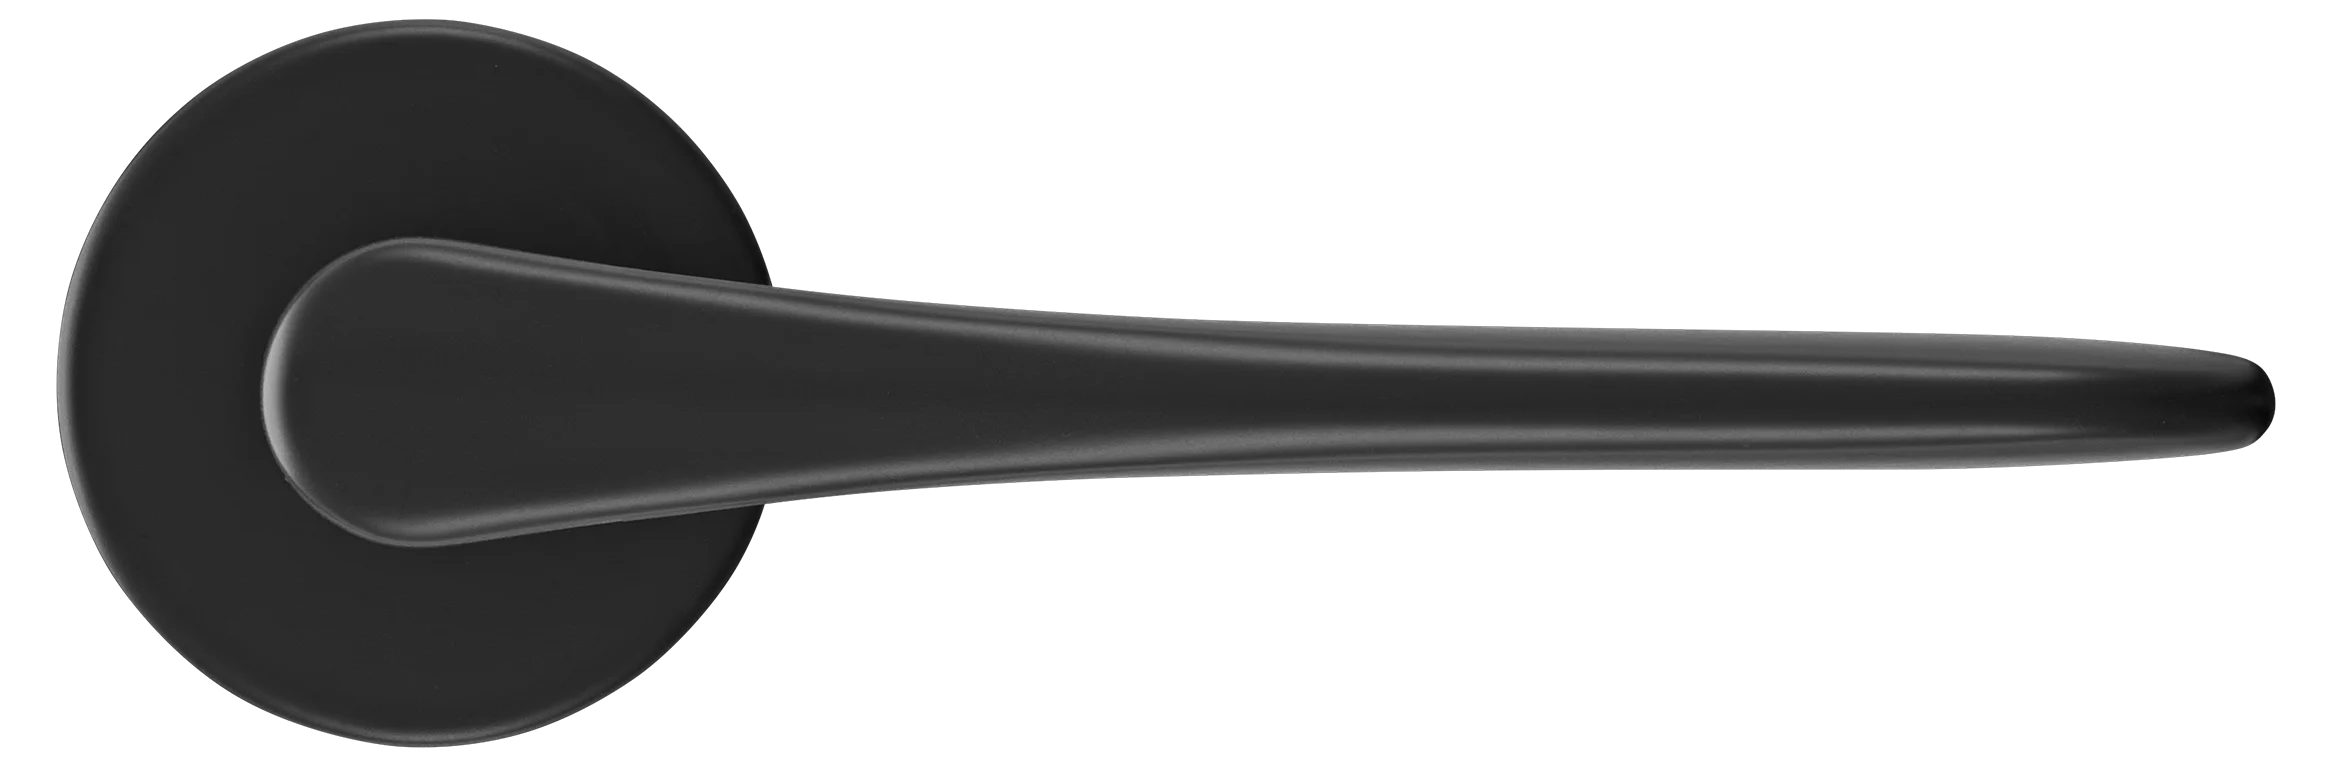 AULA R5 NERO, ручка дверная на розетке 7мм, цвет -  черный фото купить в Чебоксарах